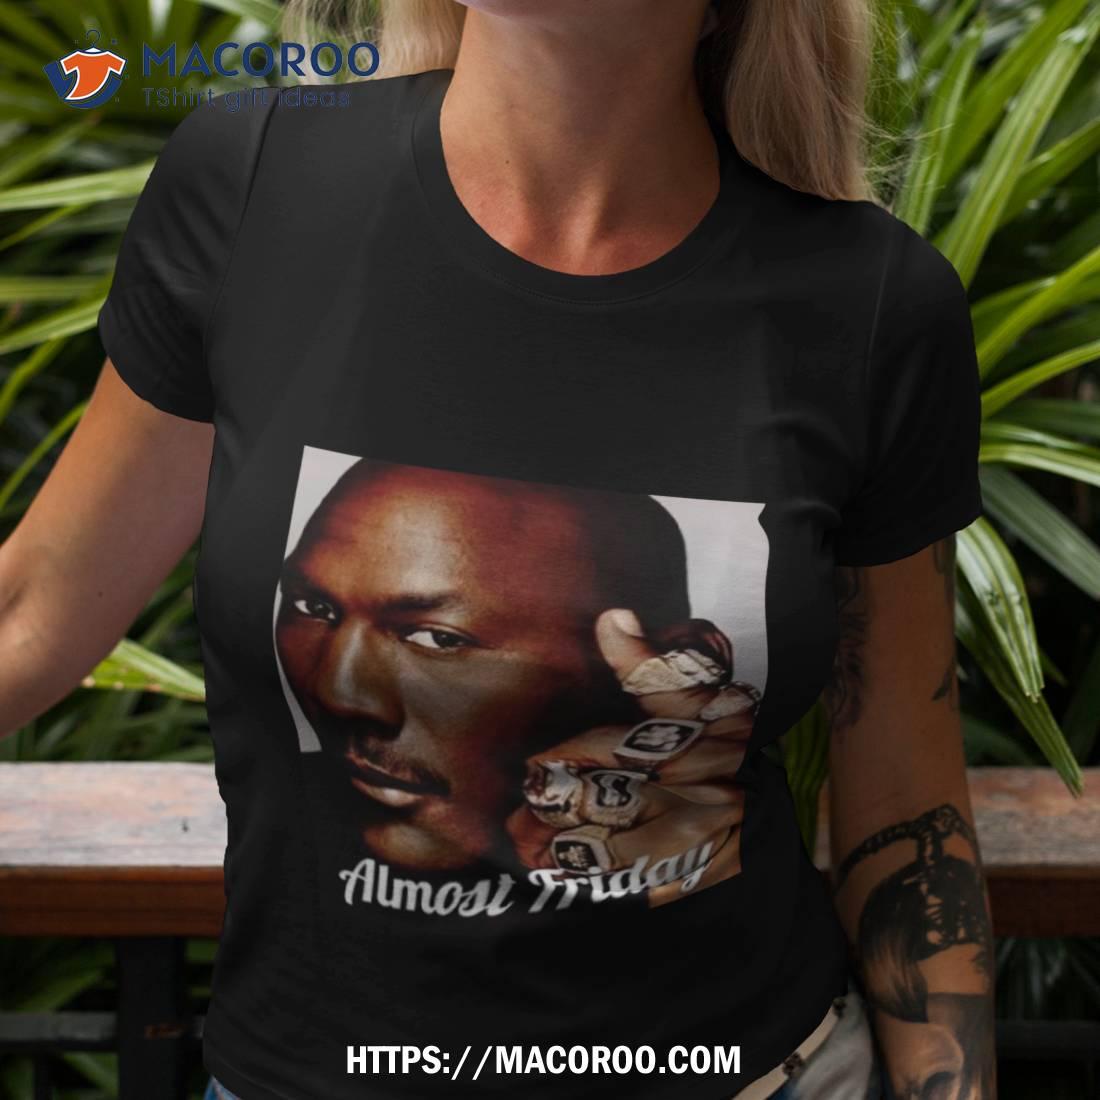 Michael Jordan - Michael Jordan - T-Shirt